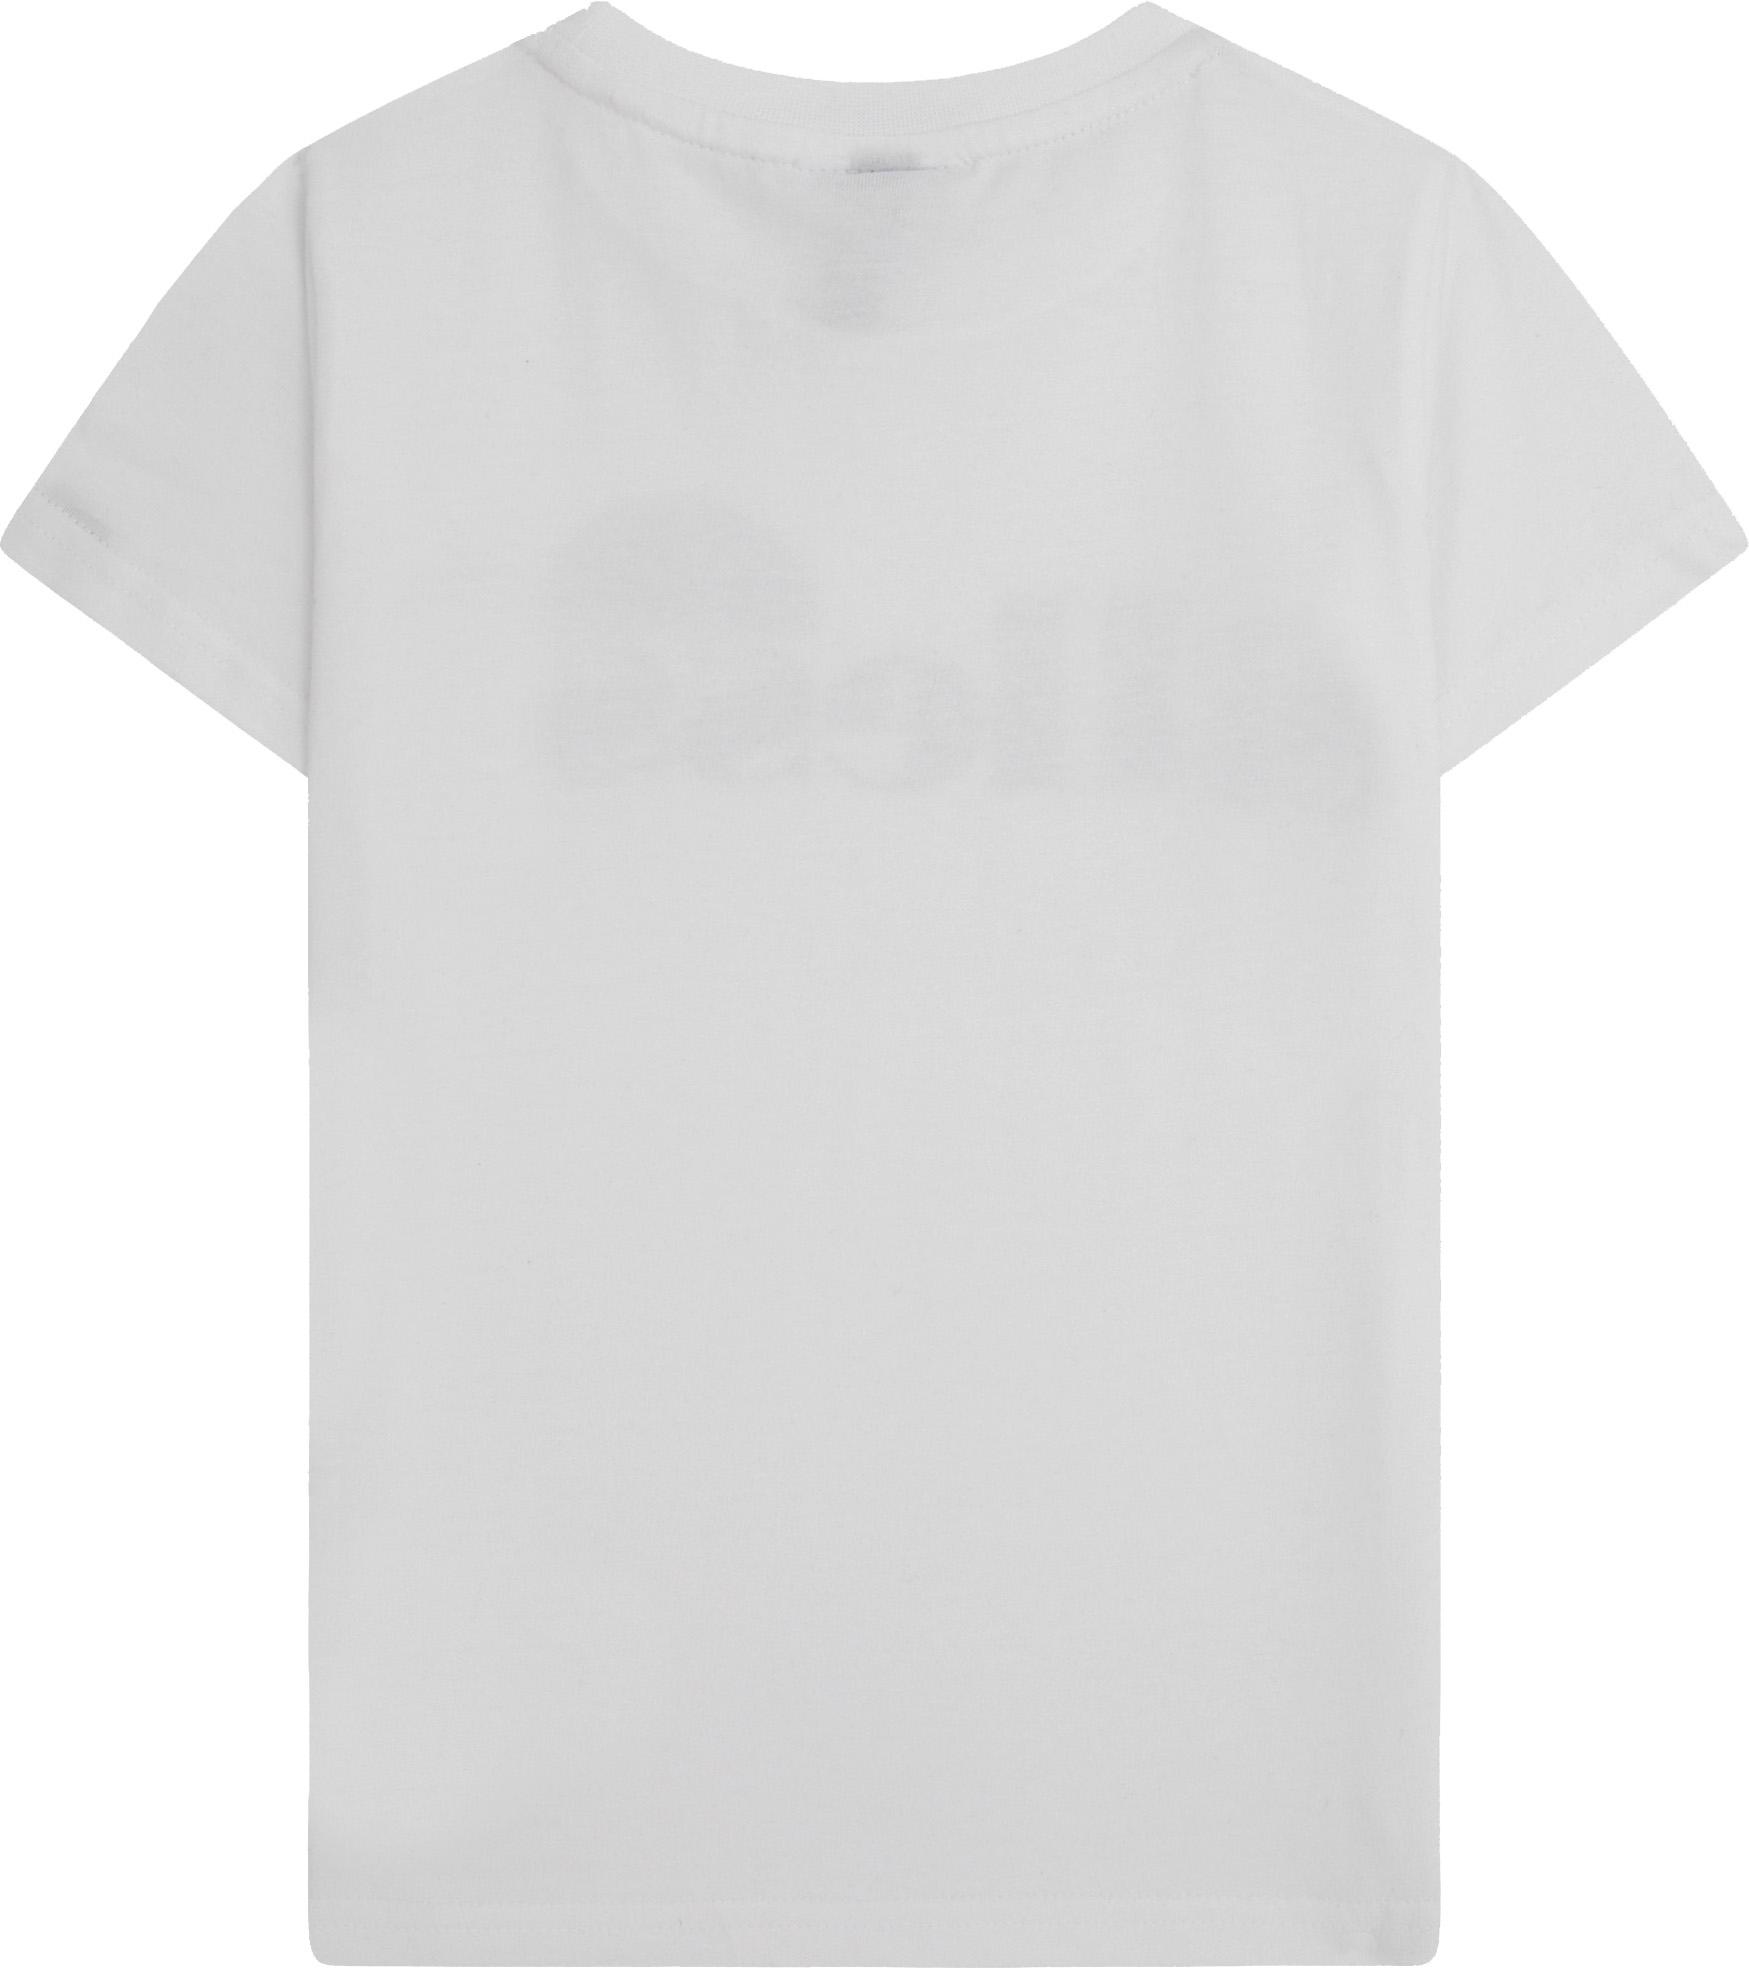 Ellesse MALIA im JNR white T-Shirt Jungen kaufen SportScheck von Shop Online